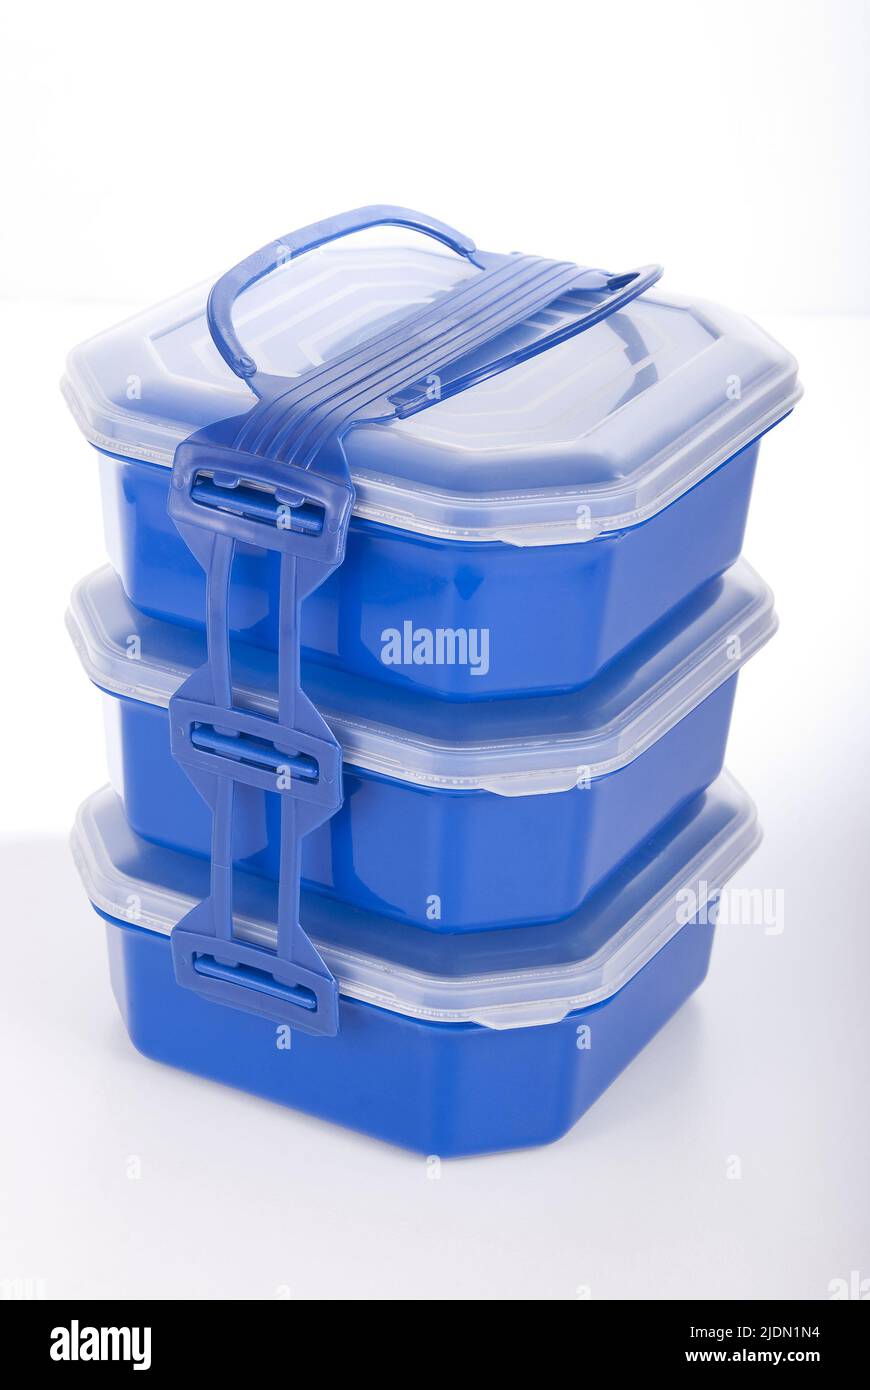 https://c8.alamy.com/comp/2JDN1N4/household-utensils-blue-plastic-lunch-box-2JDN1N4.jpg